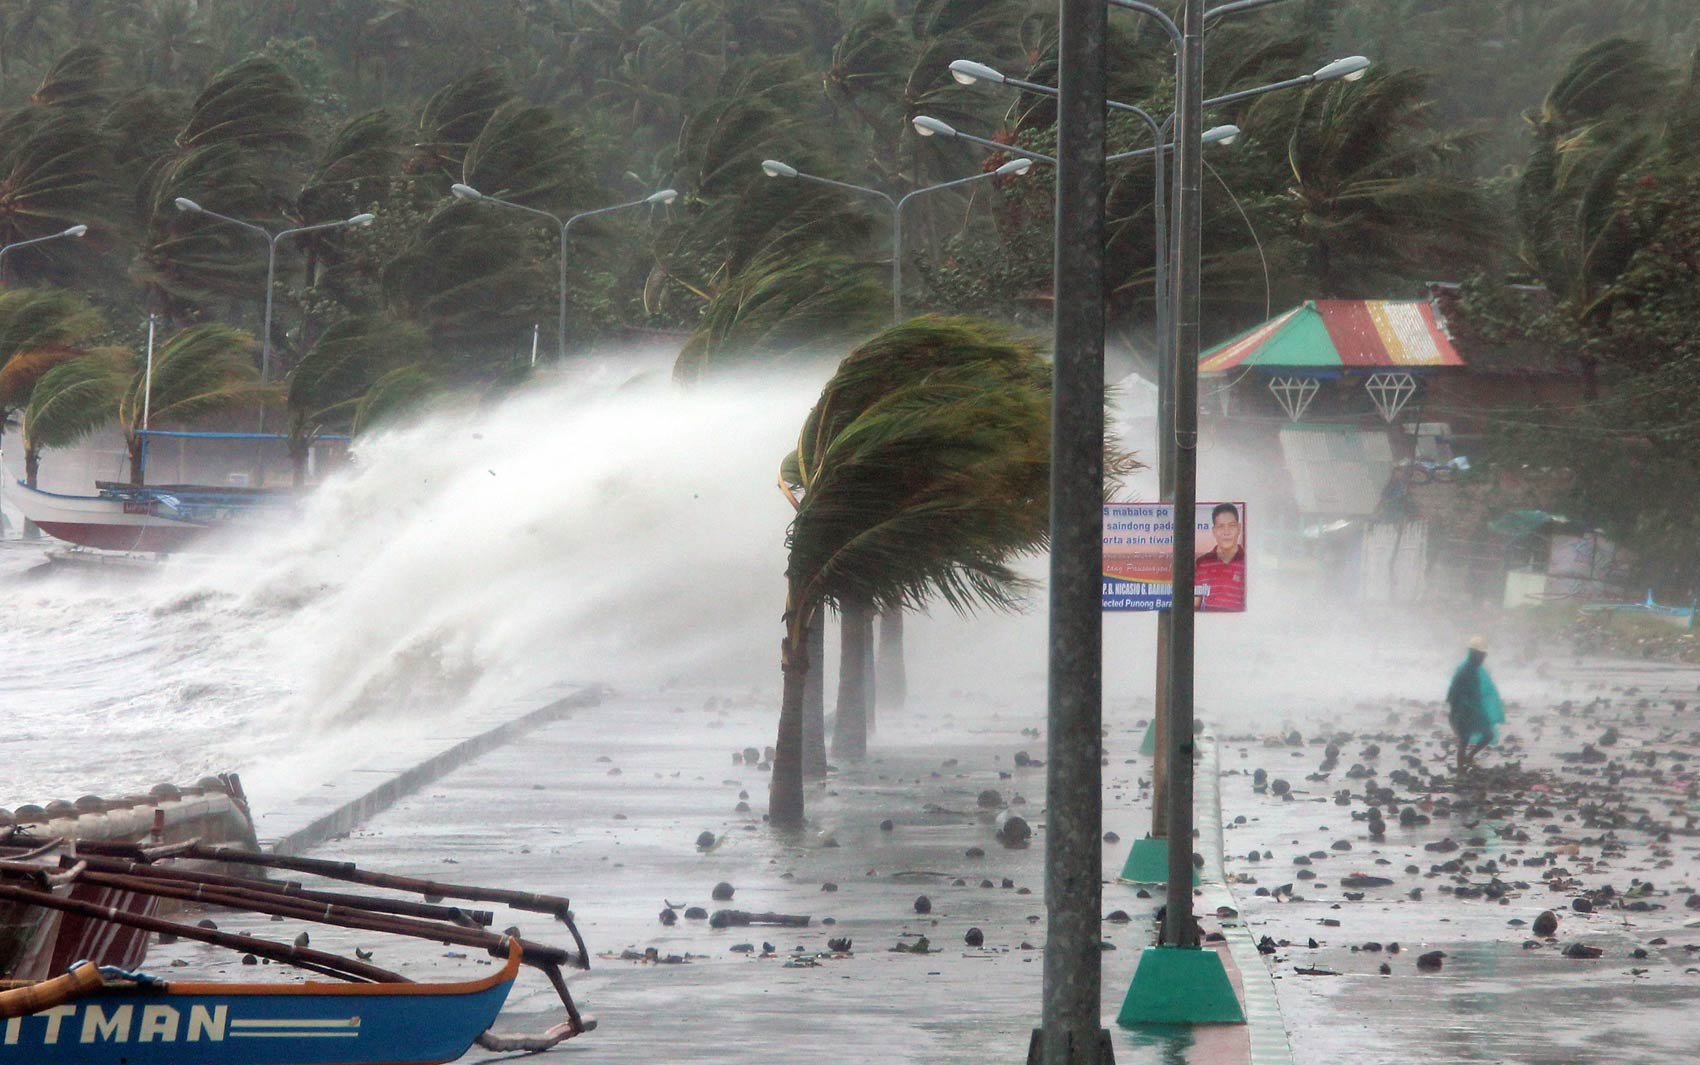 8/11 - Ondas explodem à beira da praia em Legaspi, onde o mar ficou agitado com a passagem do supertufão